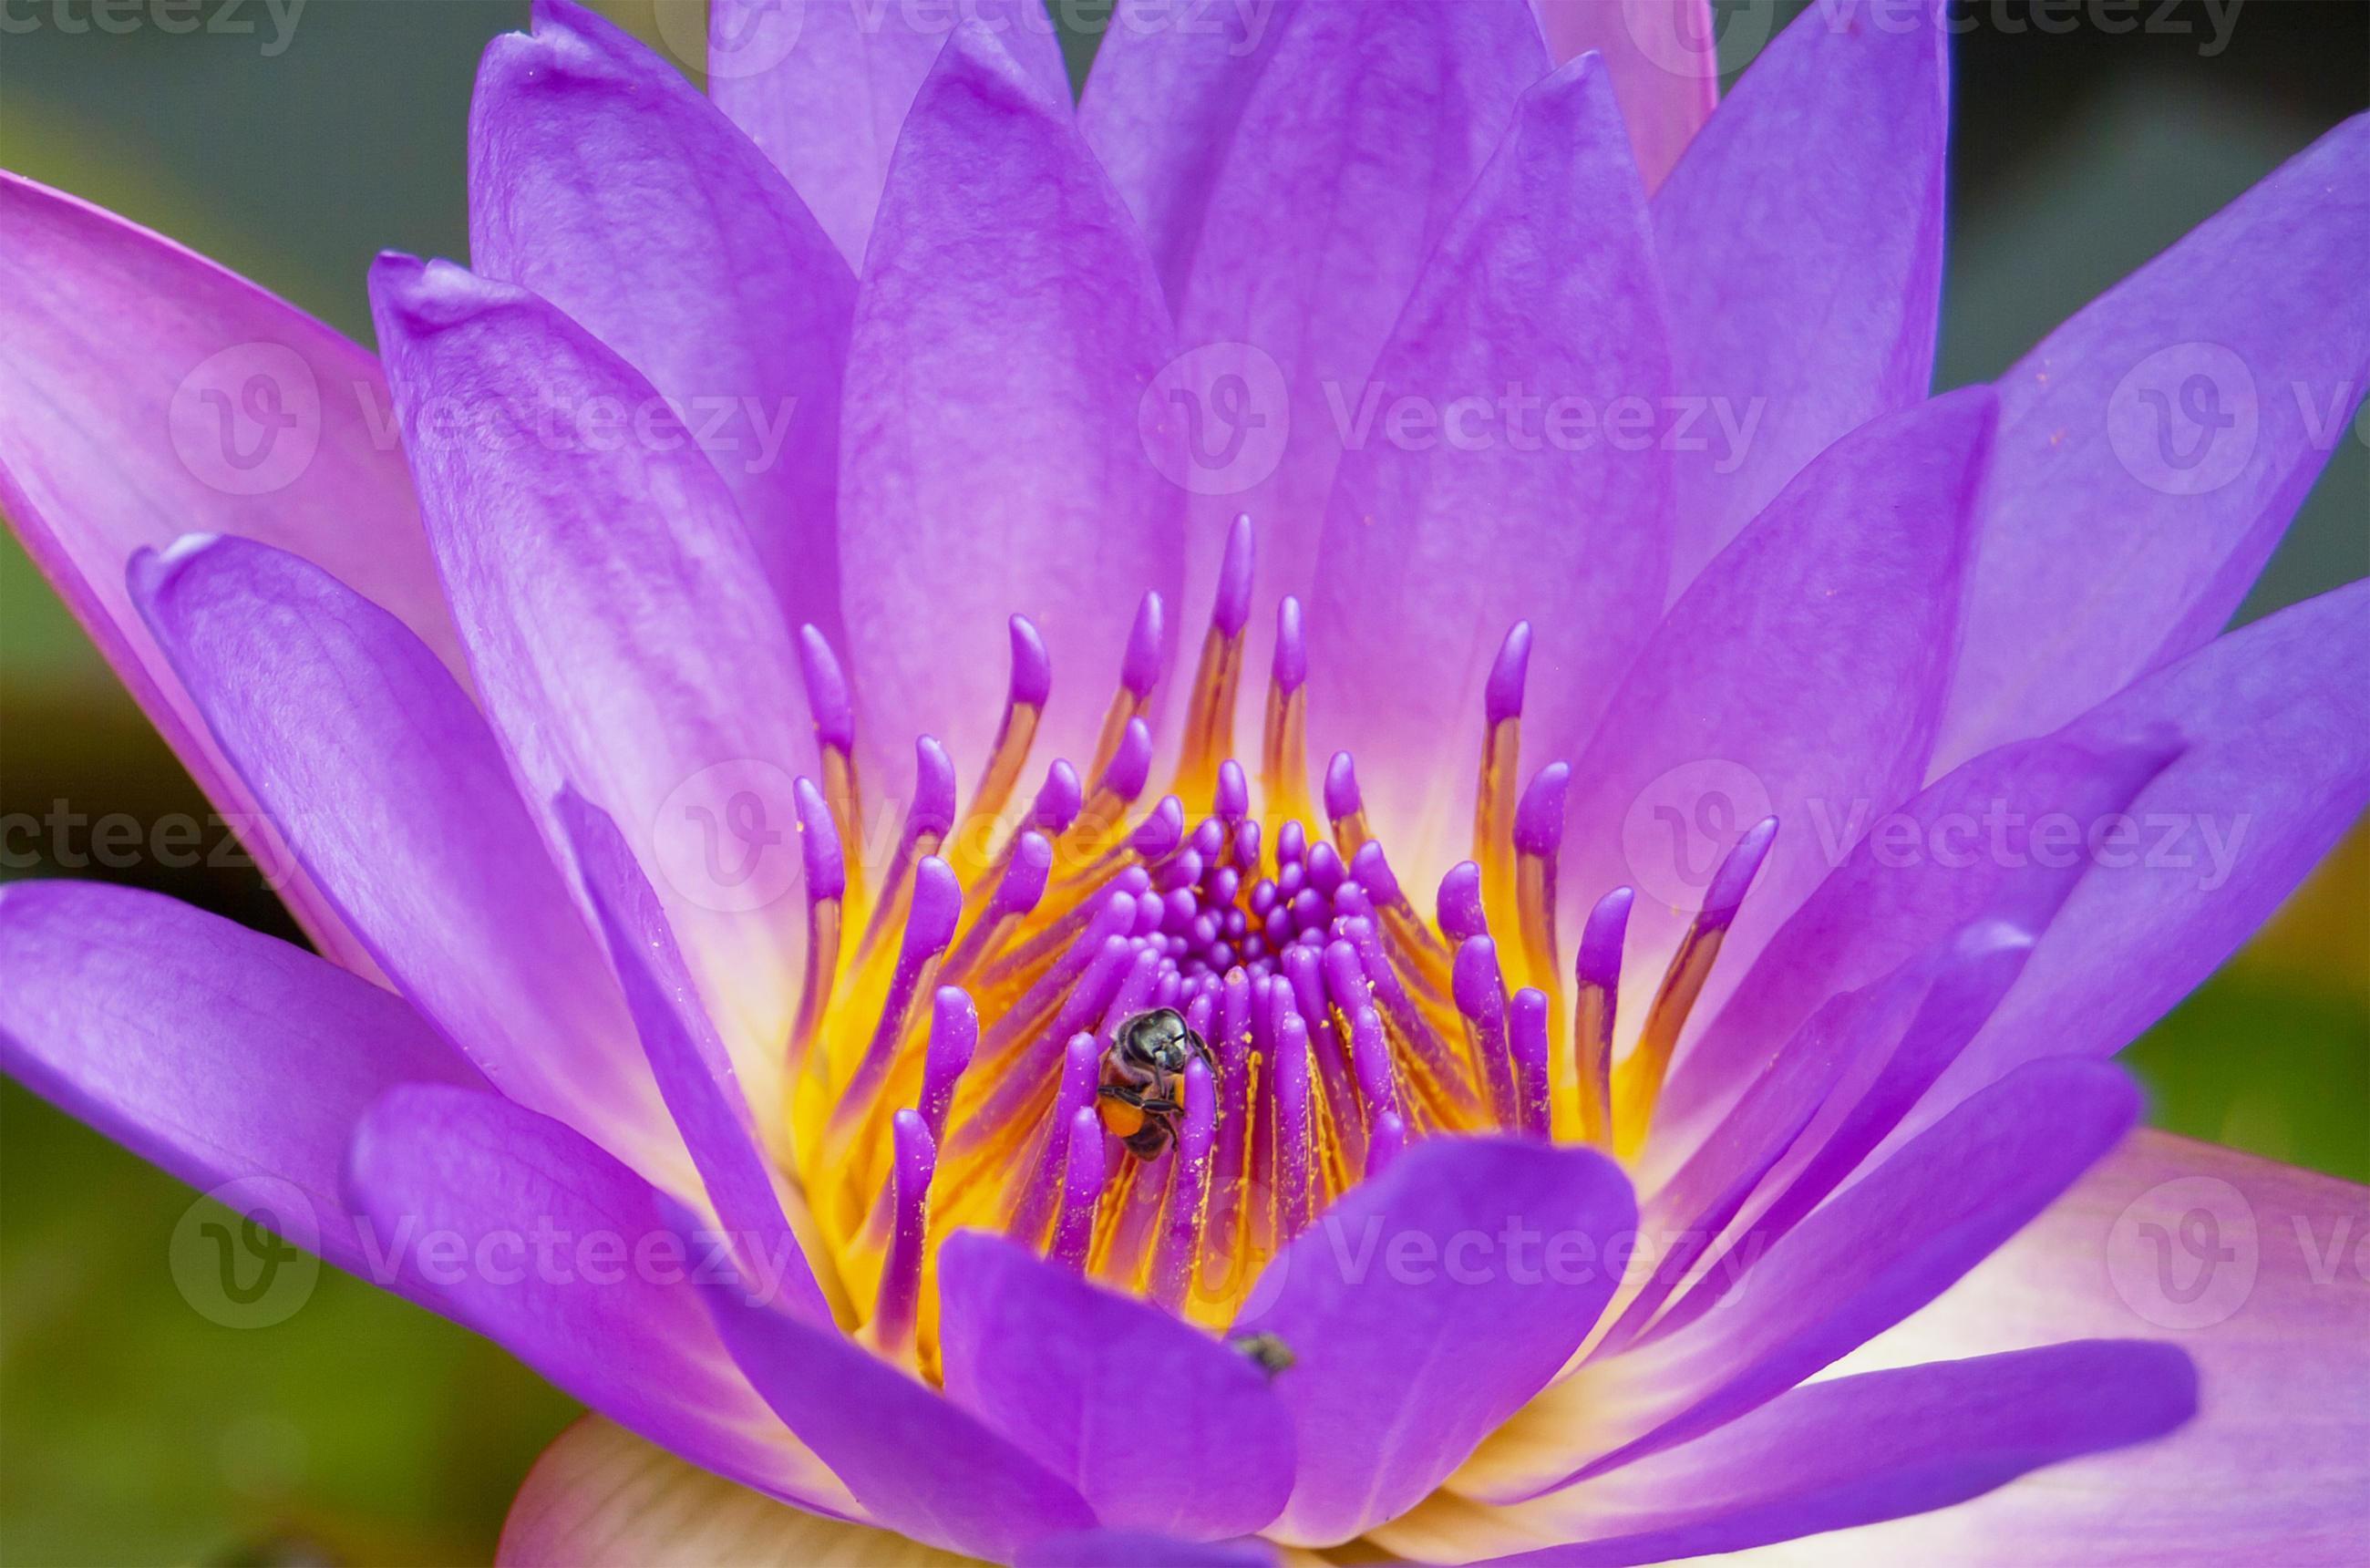 närbild biet på violetta lotusblomma. foto